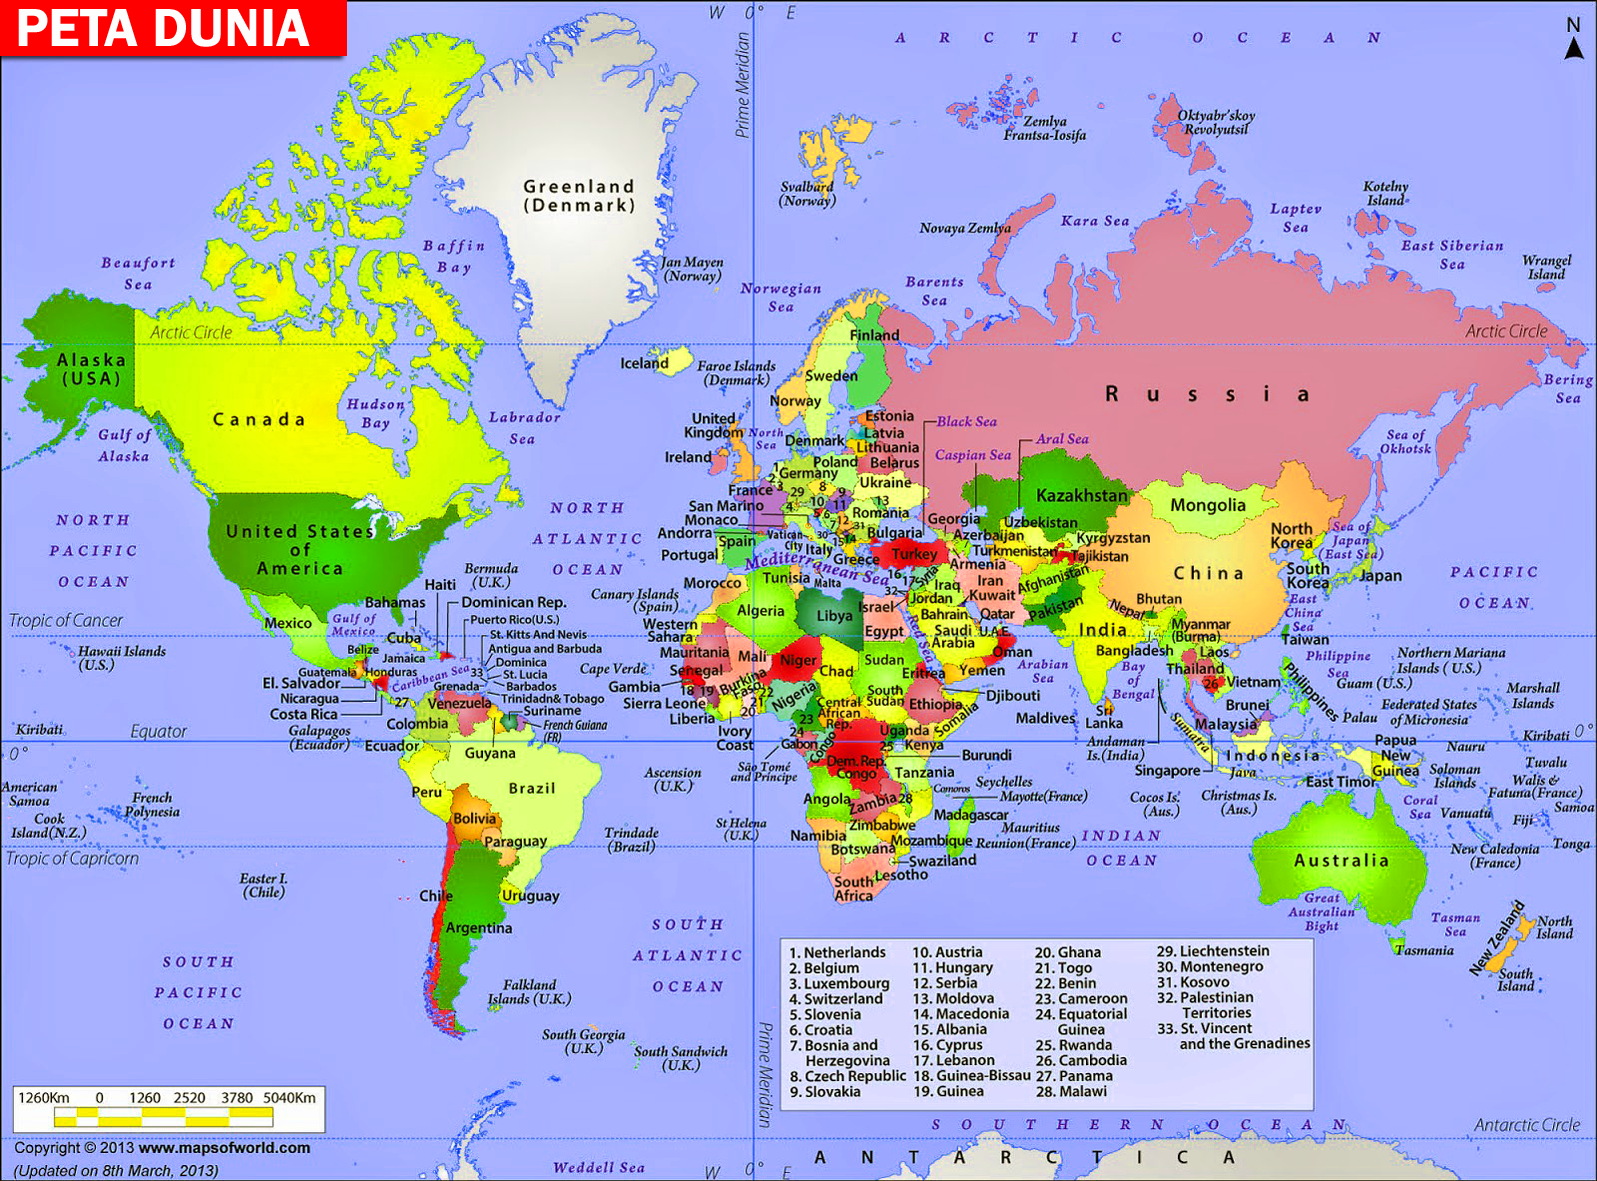 Peta dunia berwarna dan hitam putih lengkap Sejarah